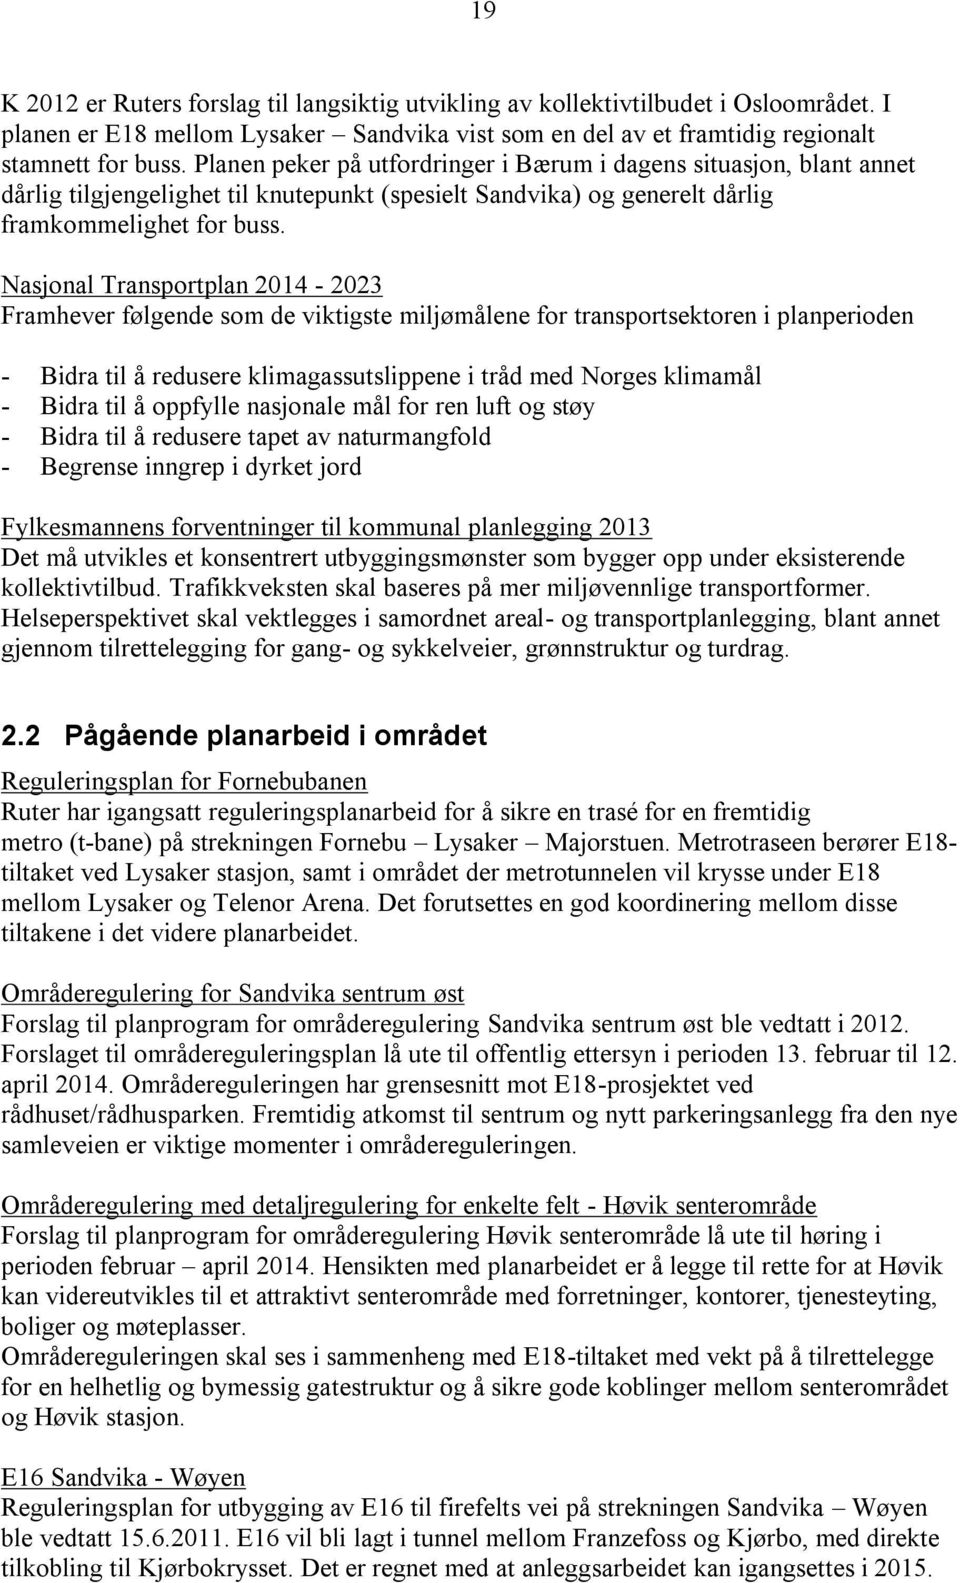 Nasjonal Transportplan 2014-2023 Framhever følgende som de viktigste miljømålene for transportsektoren i planperioden - Bidra til å redusere klimagassutslippene i tråd med Norges klimamål - Bidra til